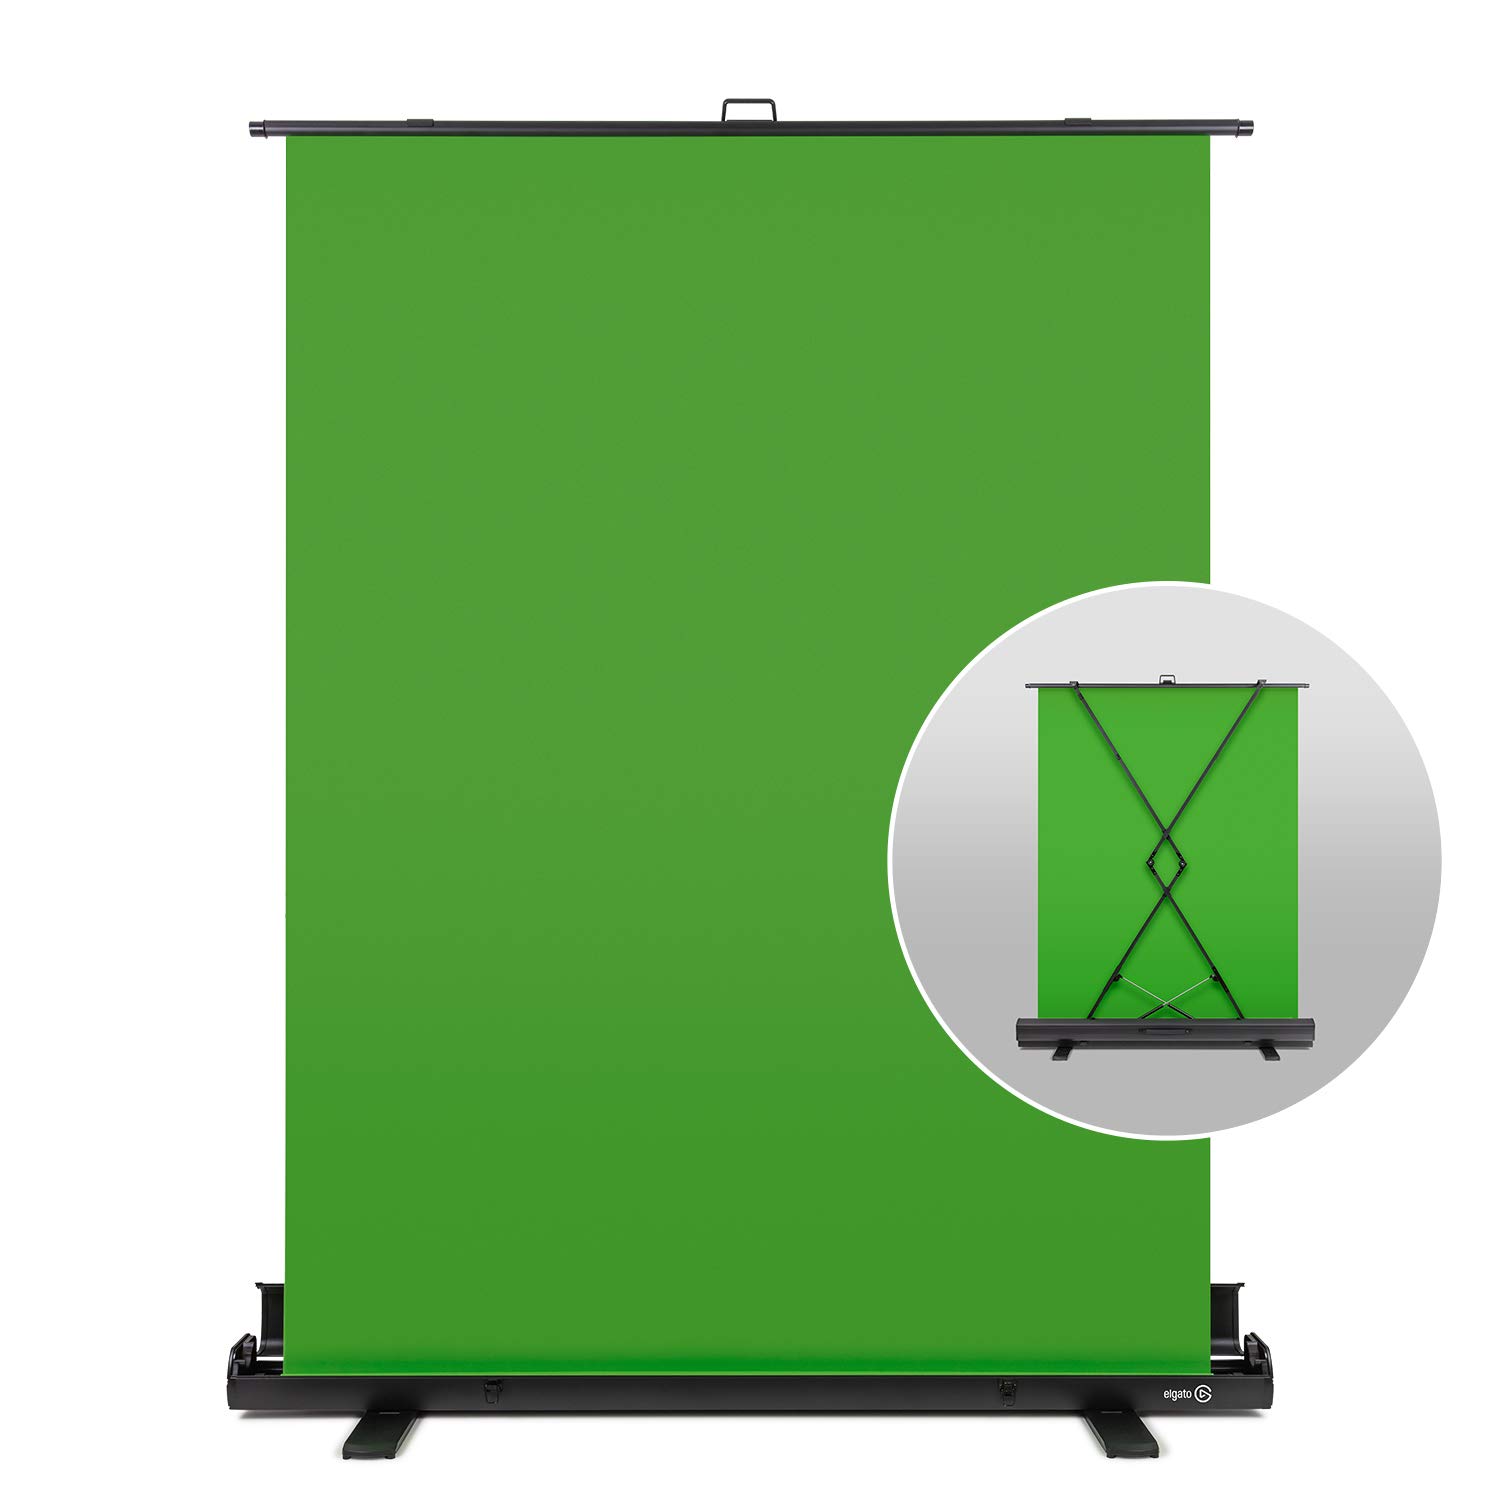 Màn hình xanh đa năng Elgato Green Screen sẽ giúp bạn có những bức ảnh, video chất lượng cao và chuyên nghiệp như trong studio. Không còn lo lắng về vấn đề sáng, phông nền, chỉ cần sử dụng sản phẩm này, tất cả sẽ được giải quyết.